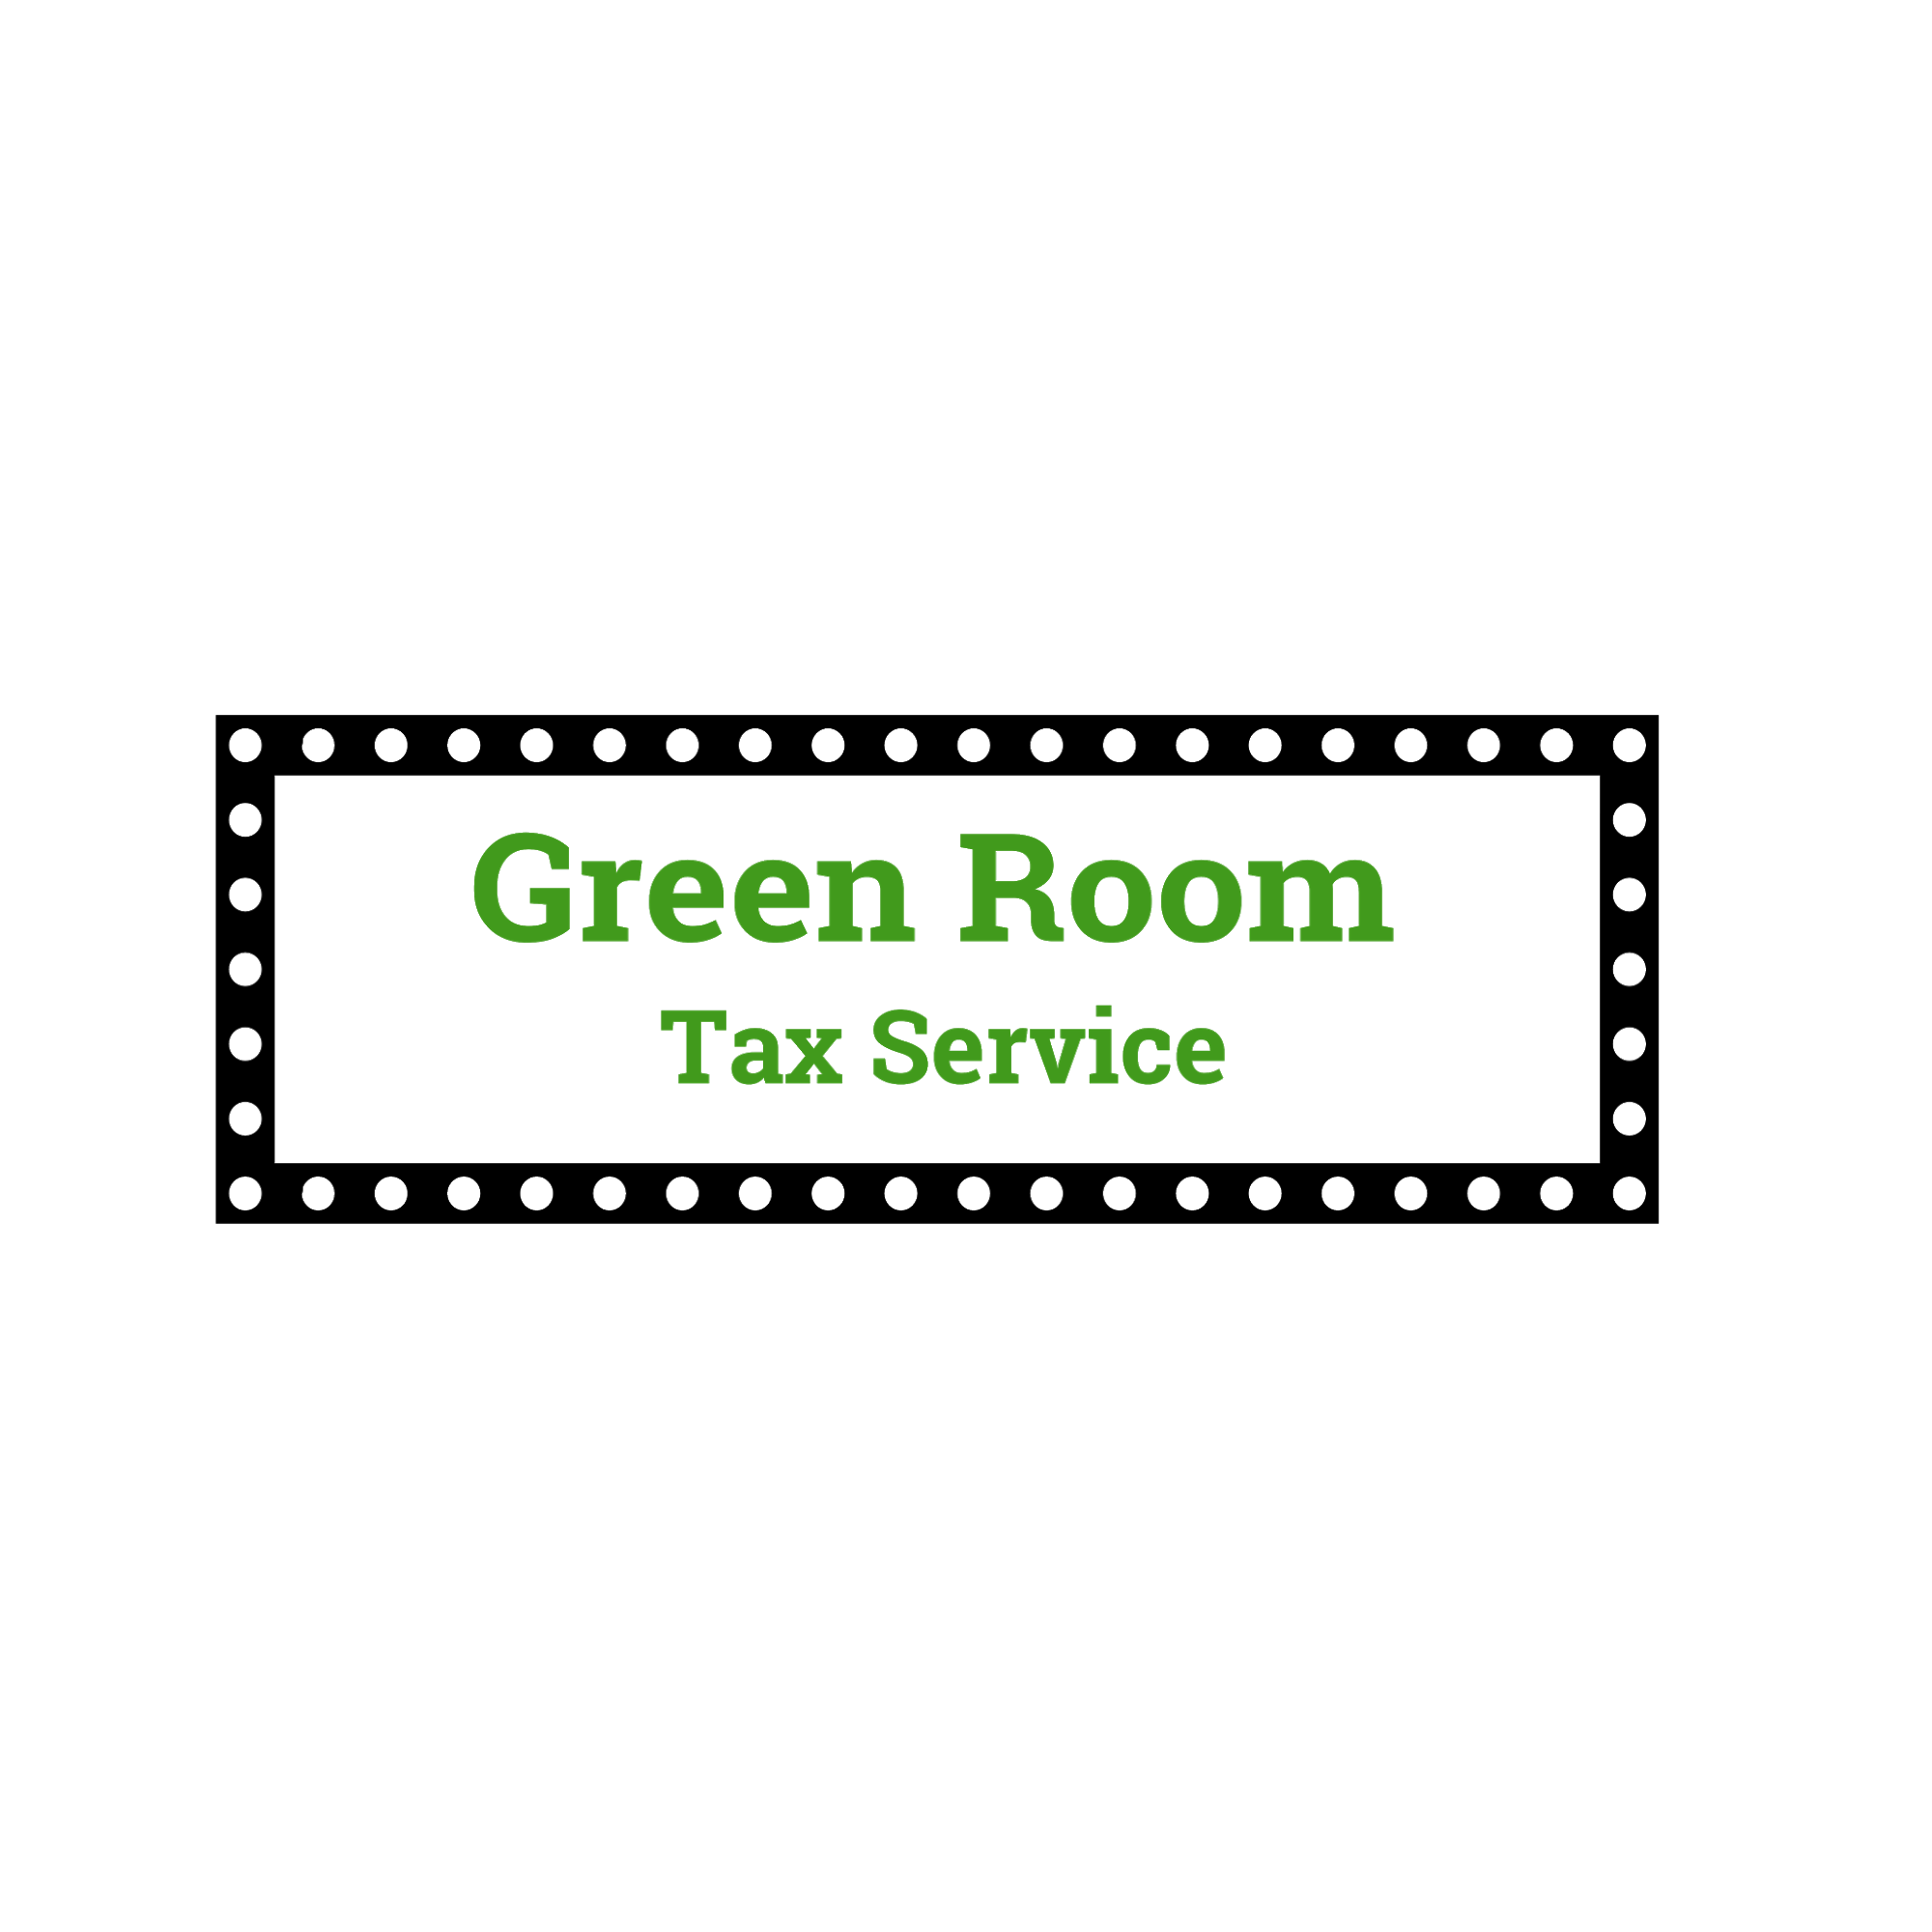 Green Room Tax Service